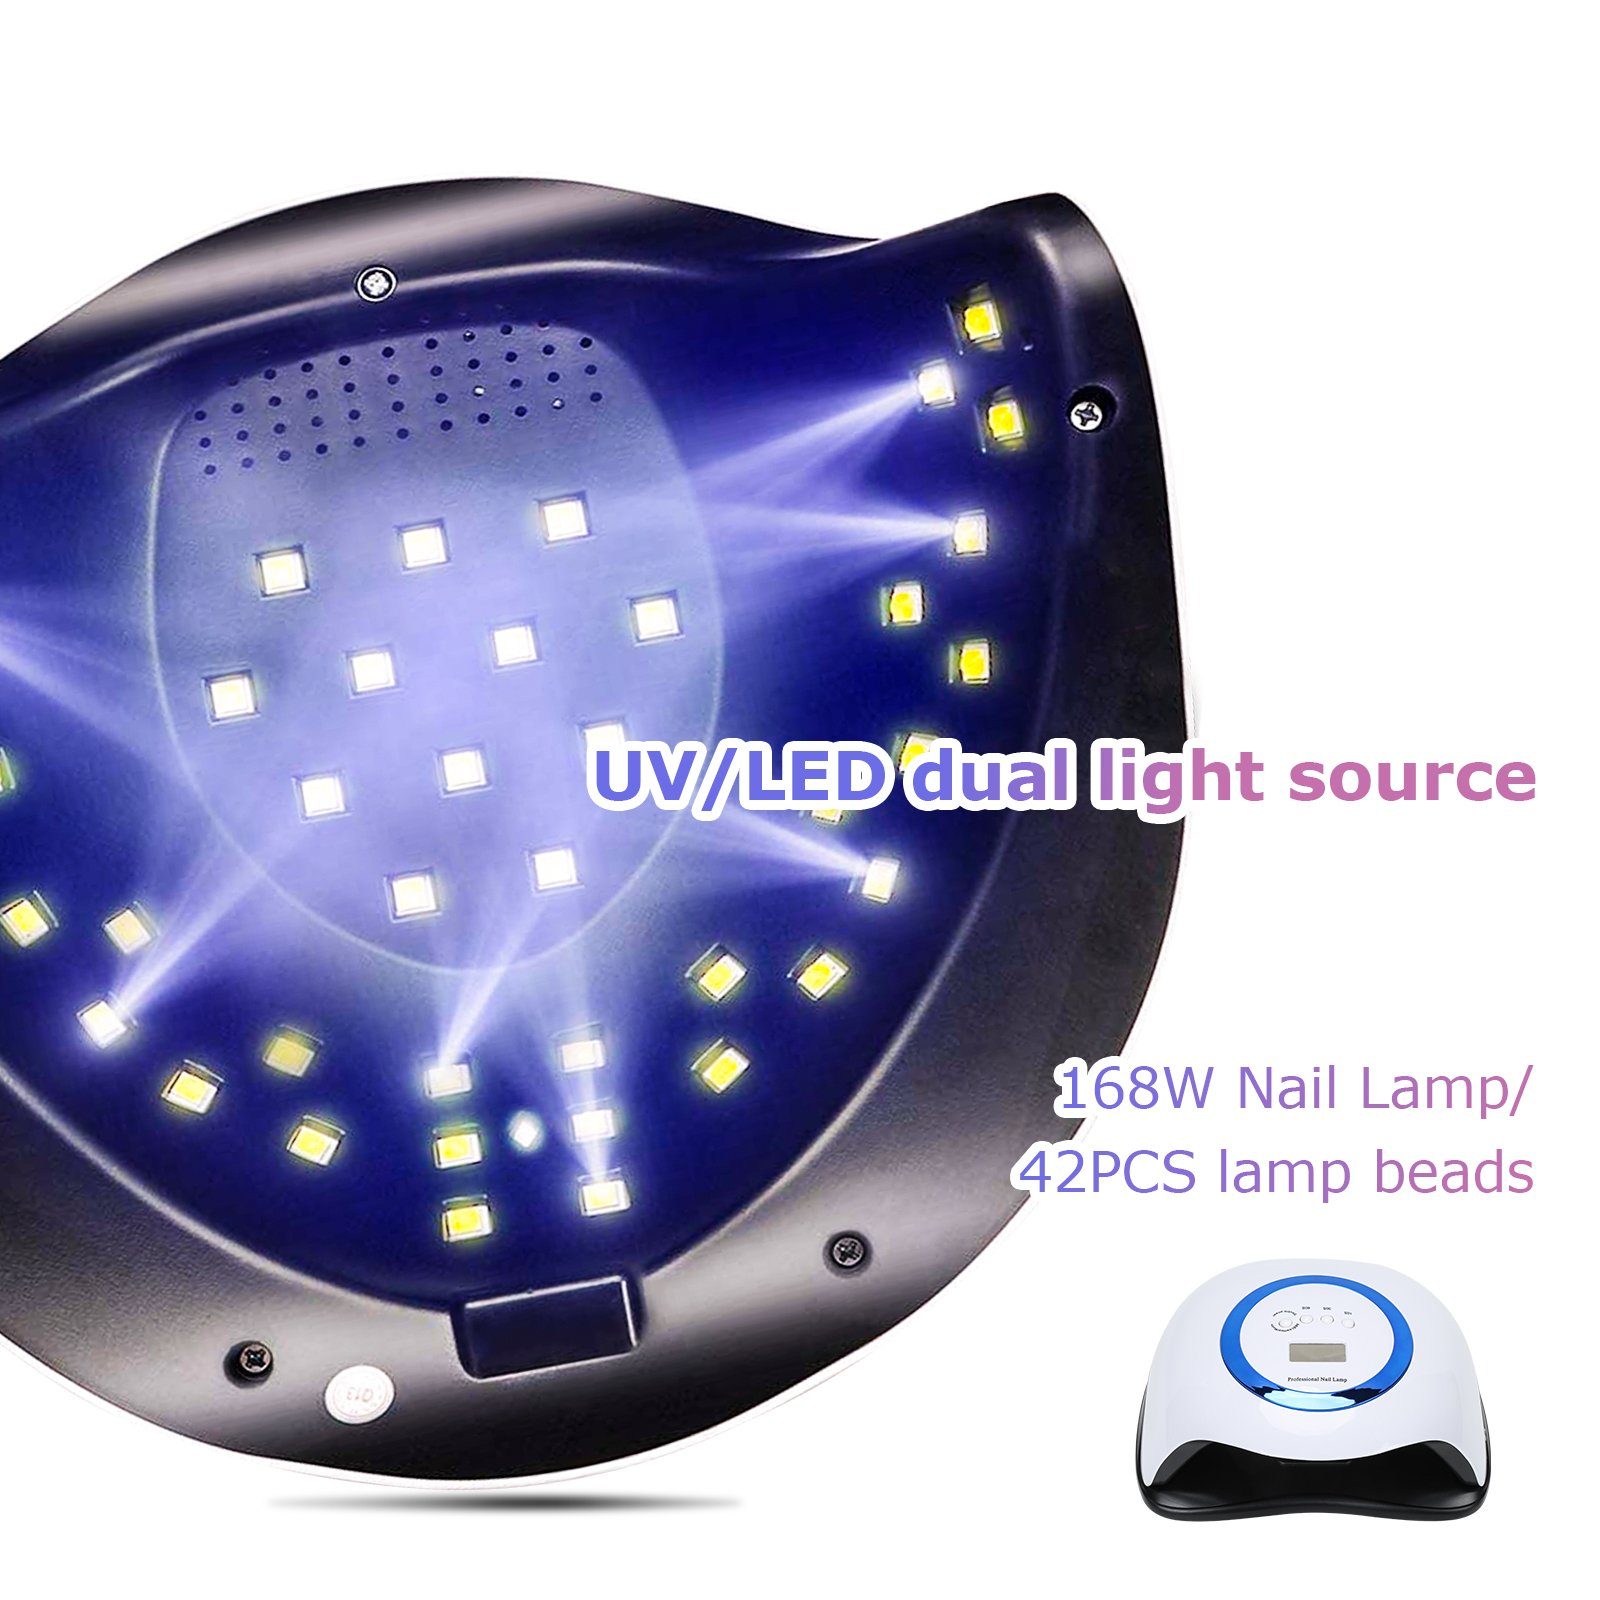 Nagellacktrockner Lampe 168W UV Nageltrockner Nail mit Gimisgu 4 Timer Lampe LED Nagel